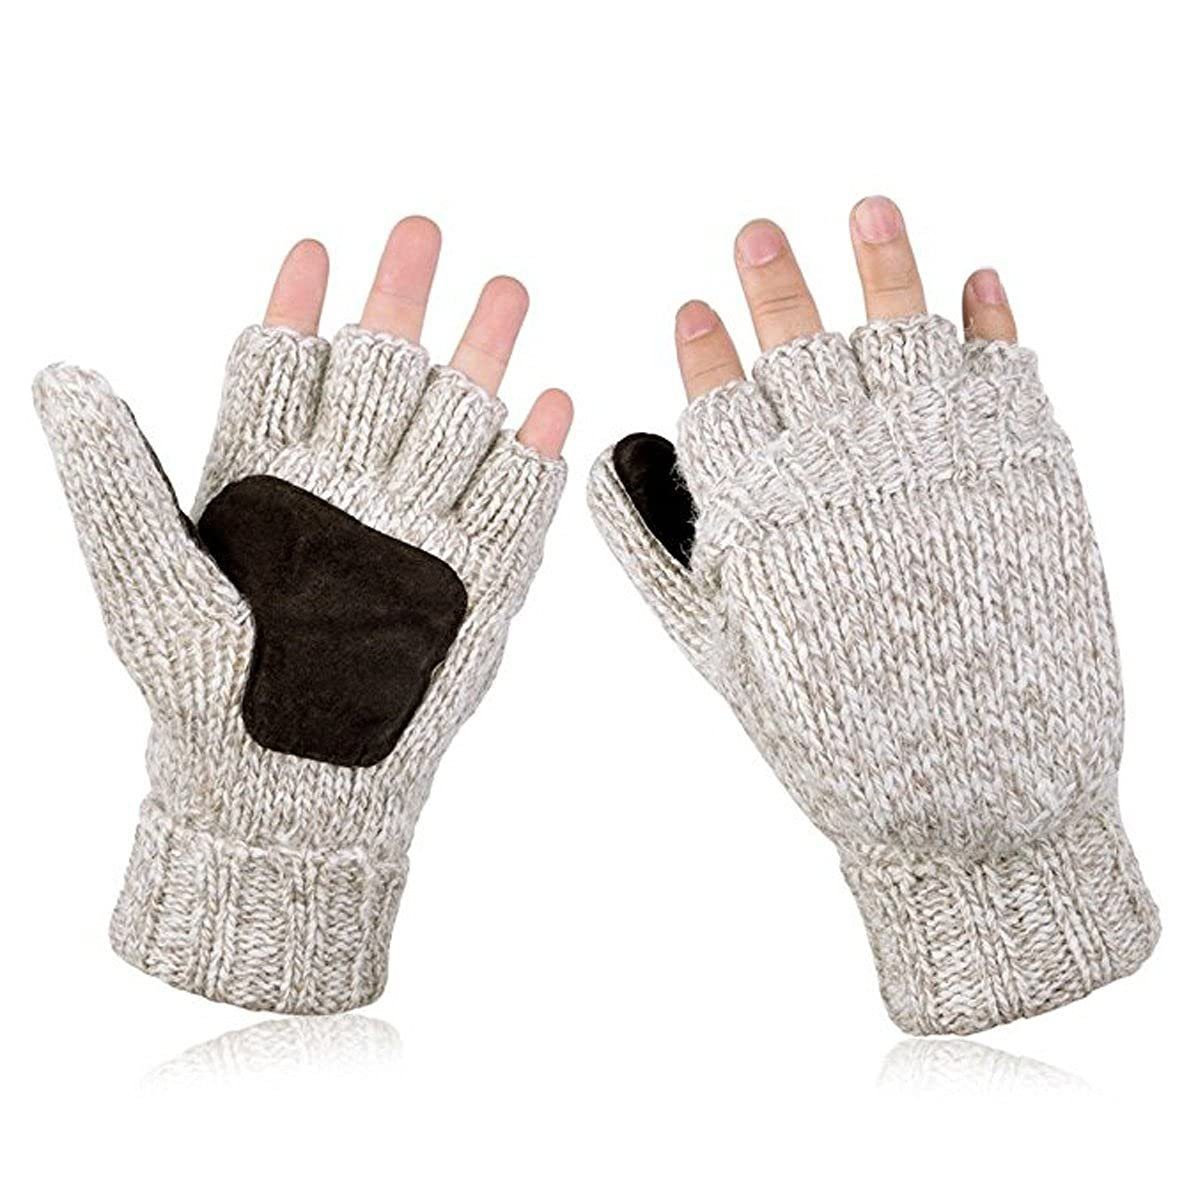 Jormftte Baumwollhandschuhe Warme Winterhandschuhe - gegen Kälte bei Sport, Arbeit & Outdoor